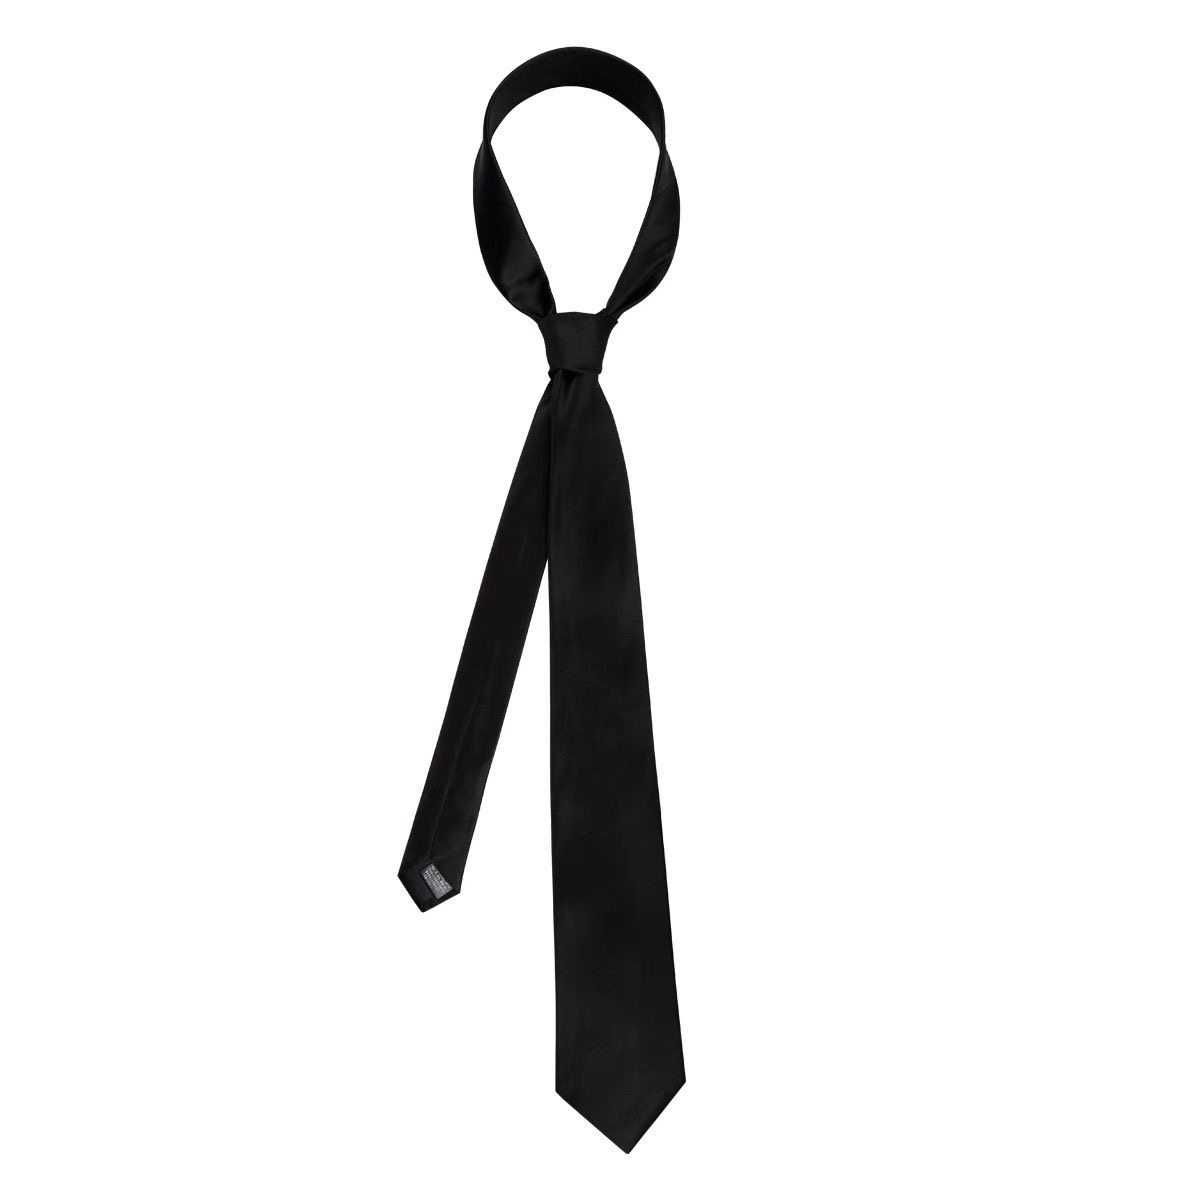 日系JK/DK领带经典黑色100%真丝日系领带 8CM宽男/女通用学生